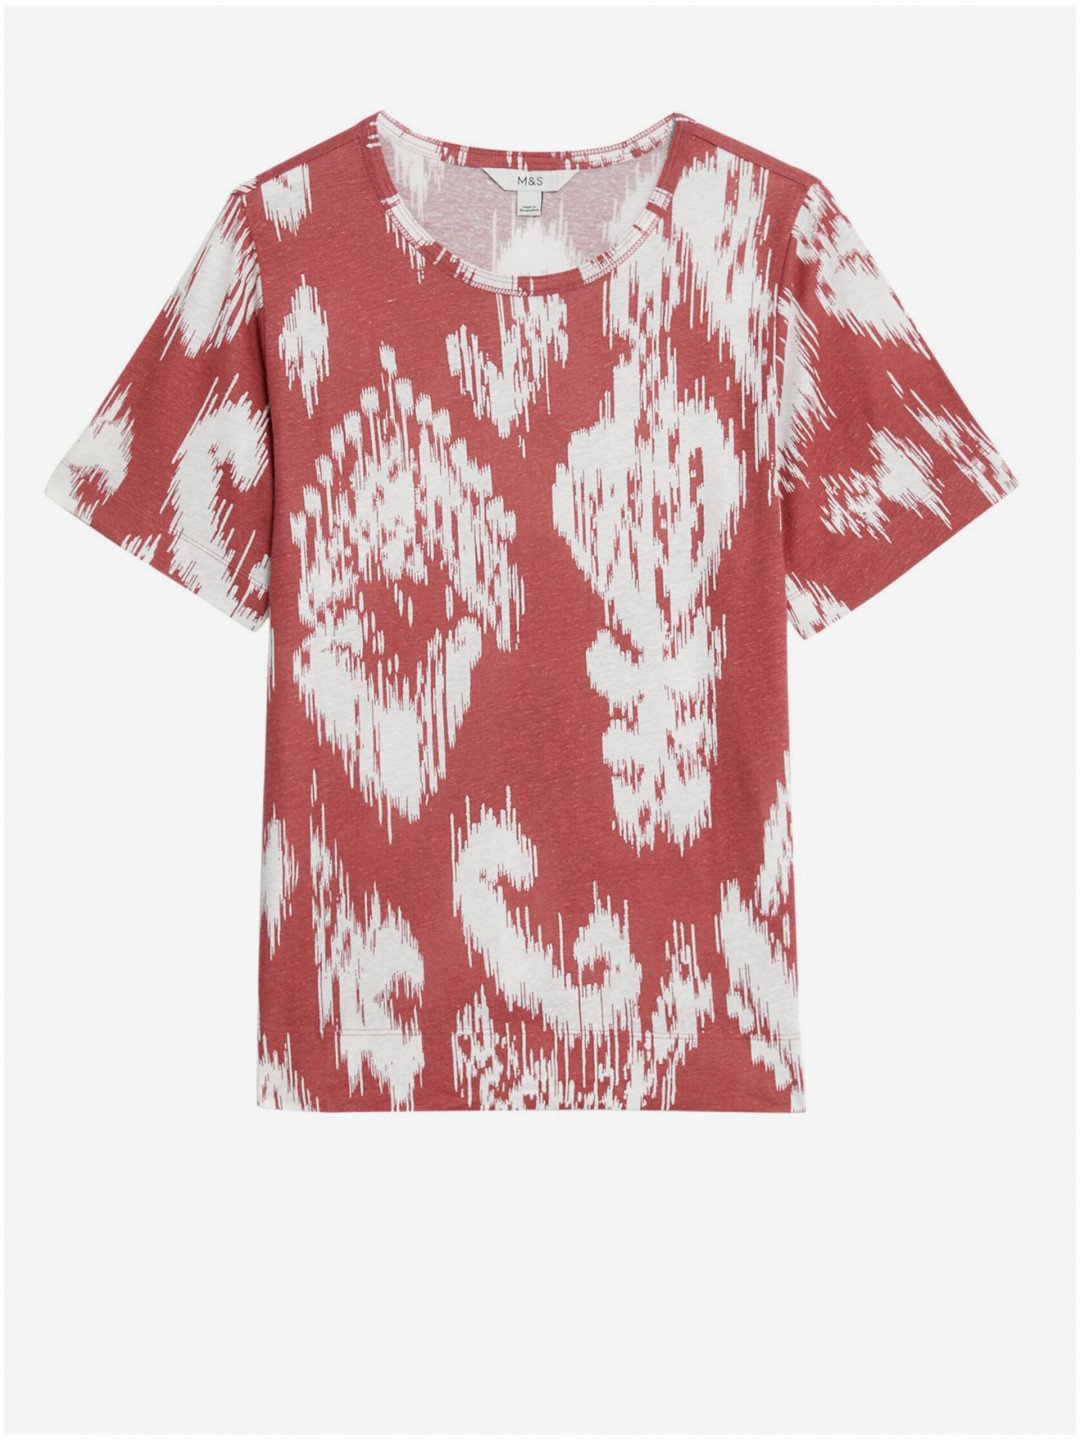 Bílo-červené dámské vzorované tričko s příměsí lnu Marks & Spencer